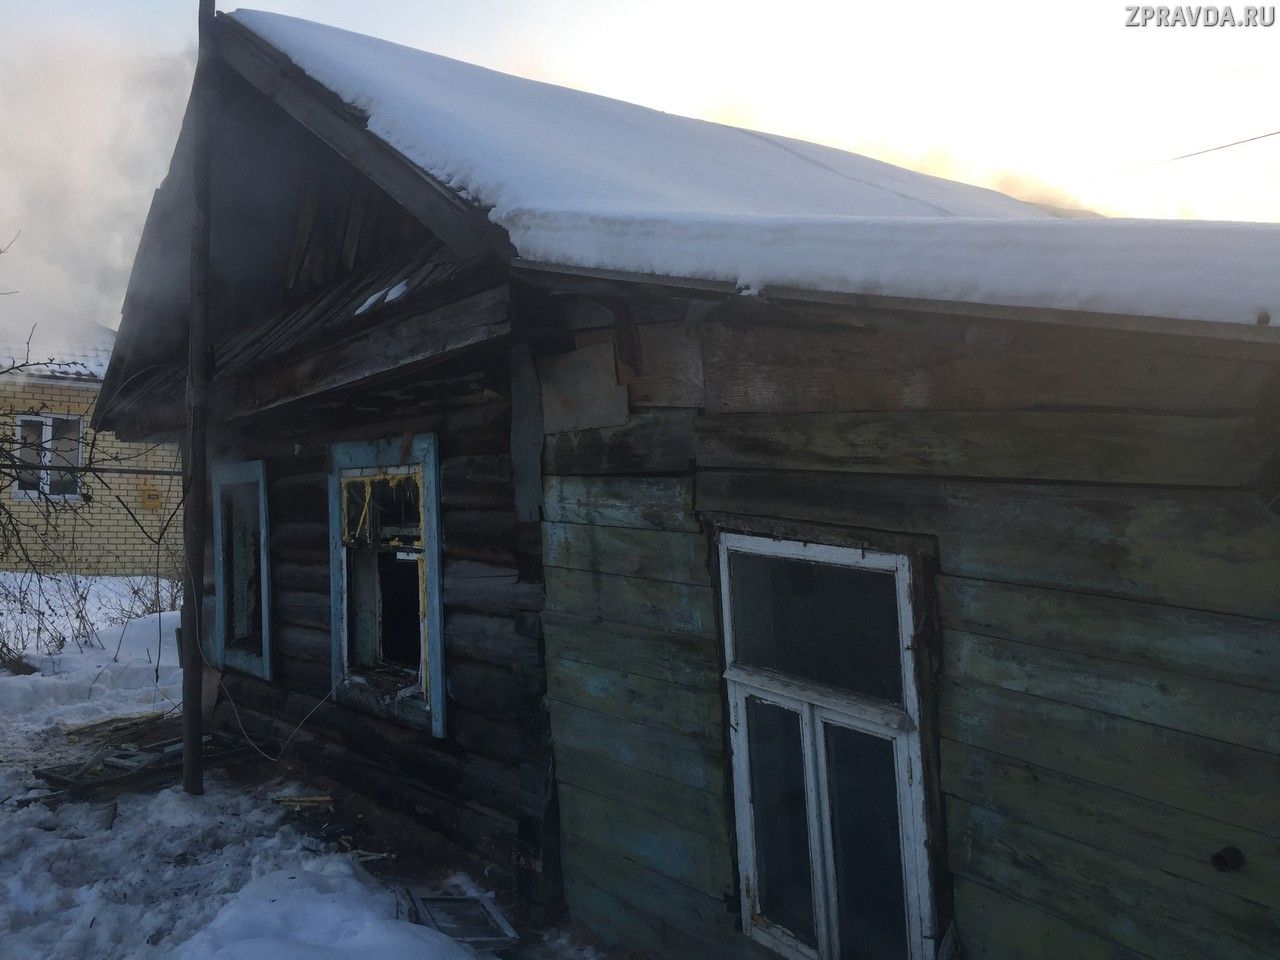 Хозяина частного дома в Зеленодольске спасли на пожаре